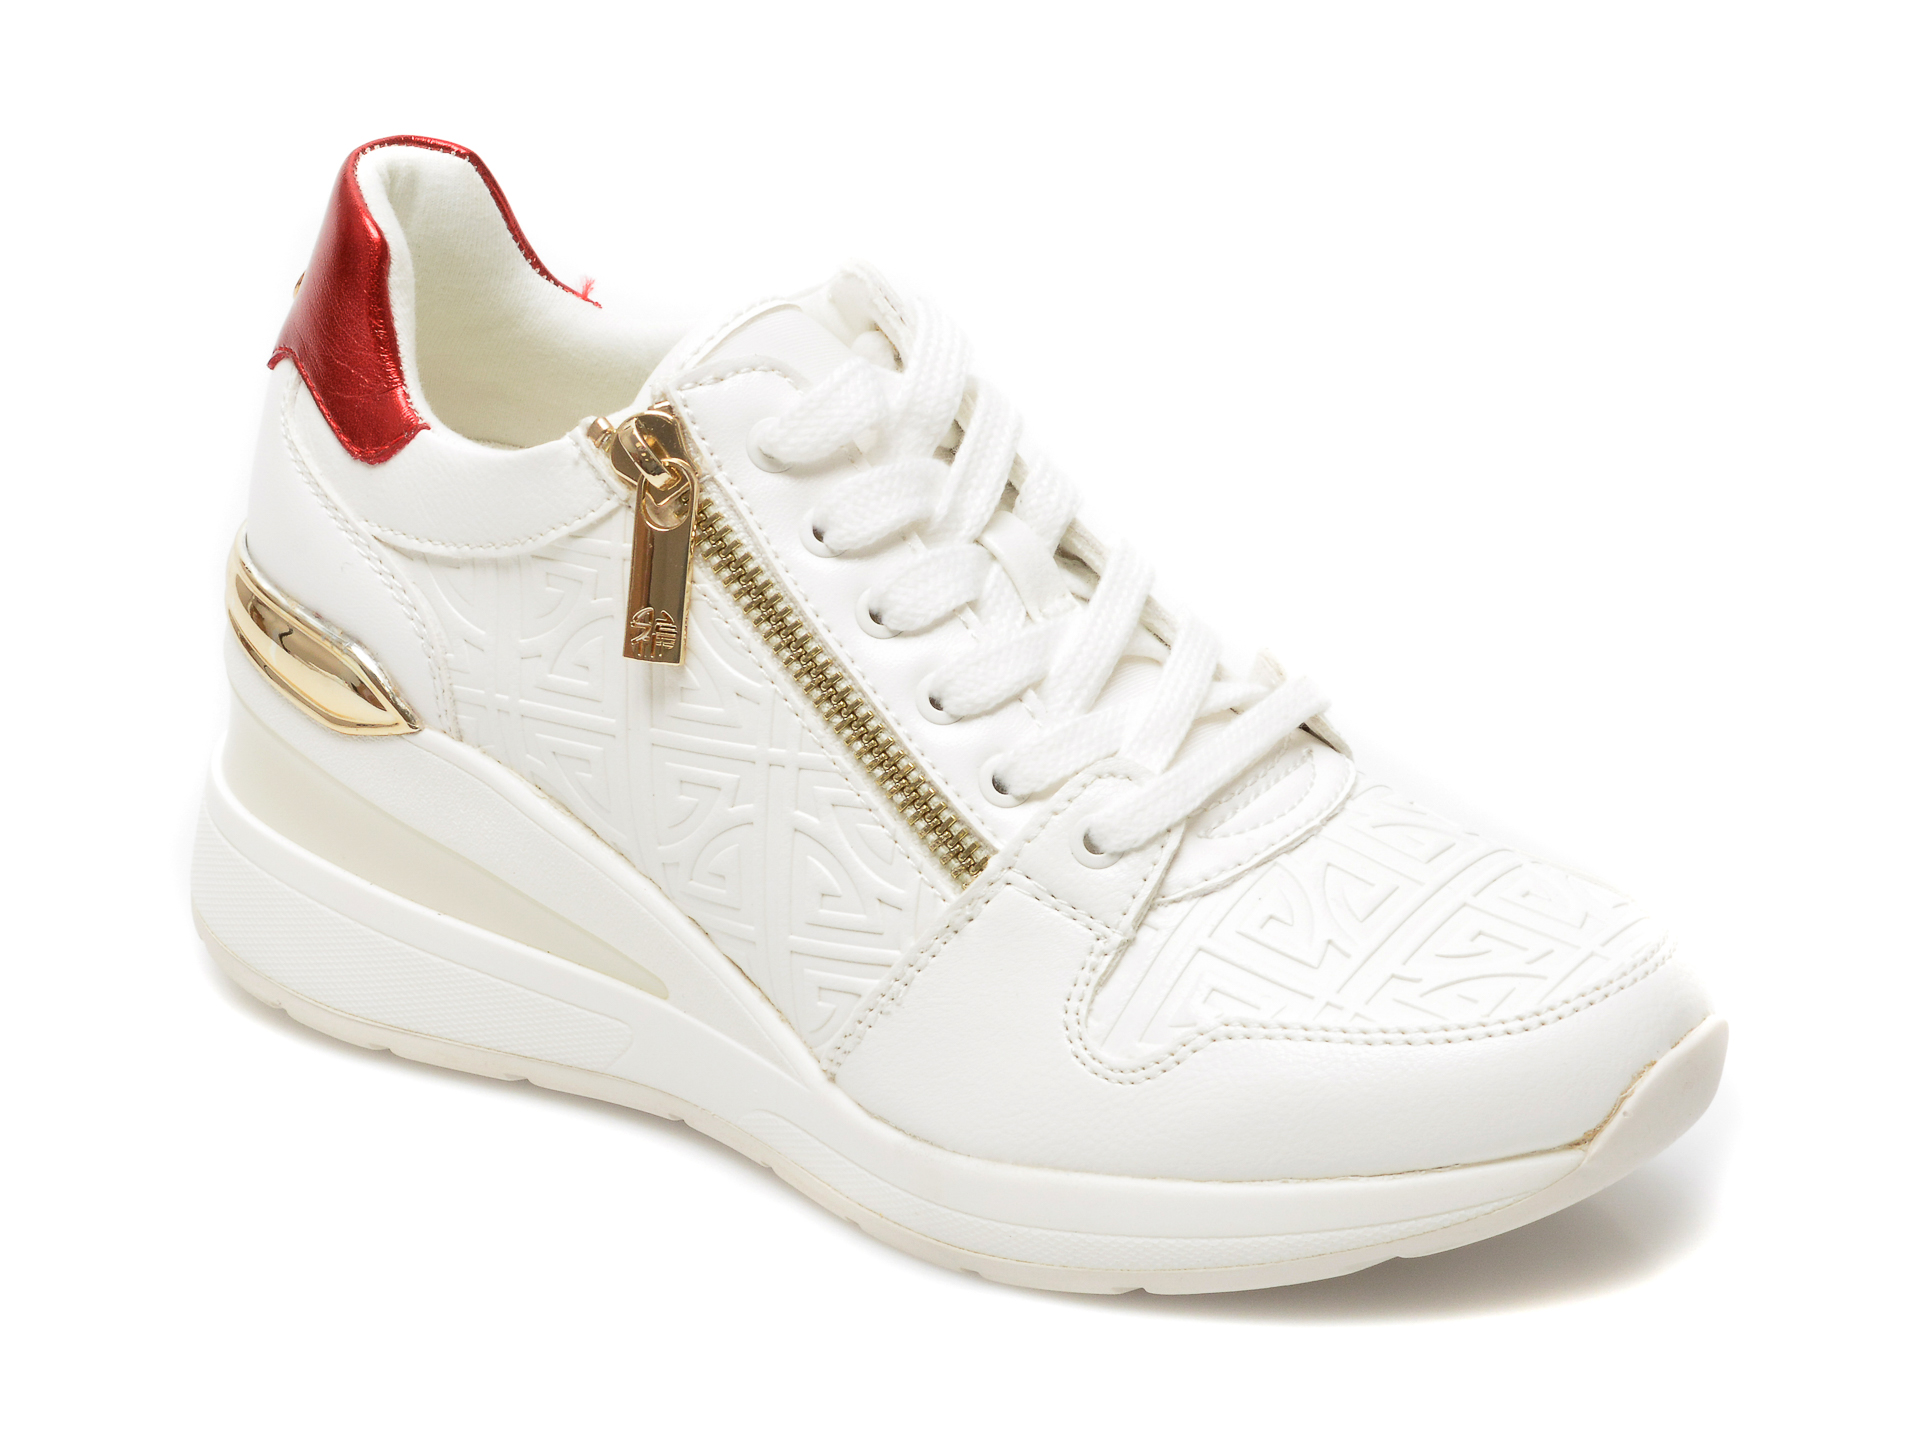 Pantofi sport ALDO albi, Jeresa100, din piele ecologica